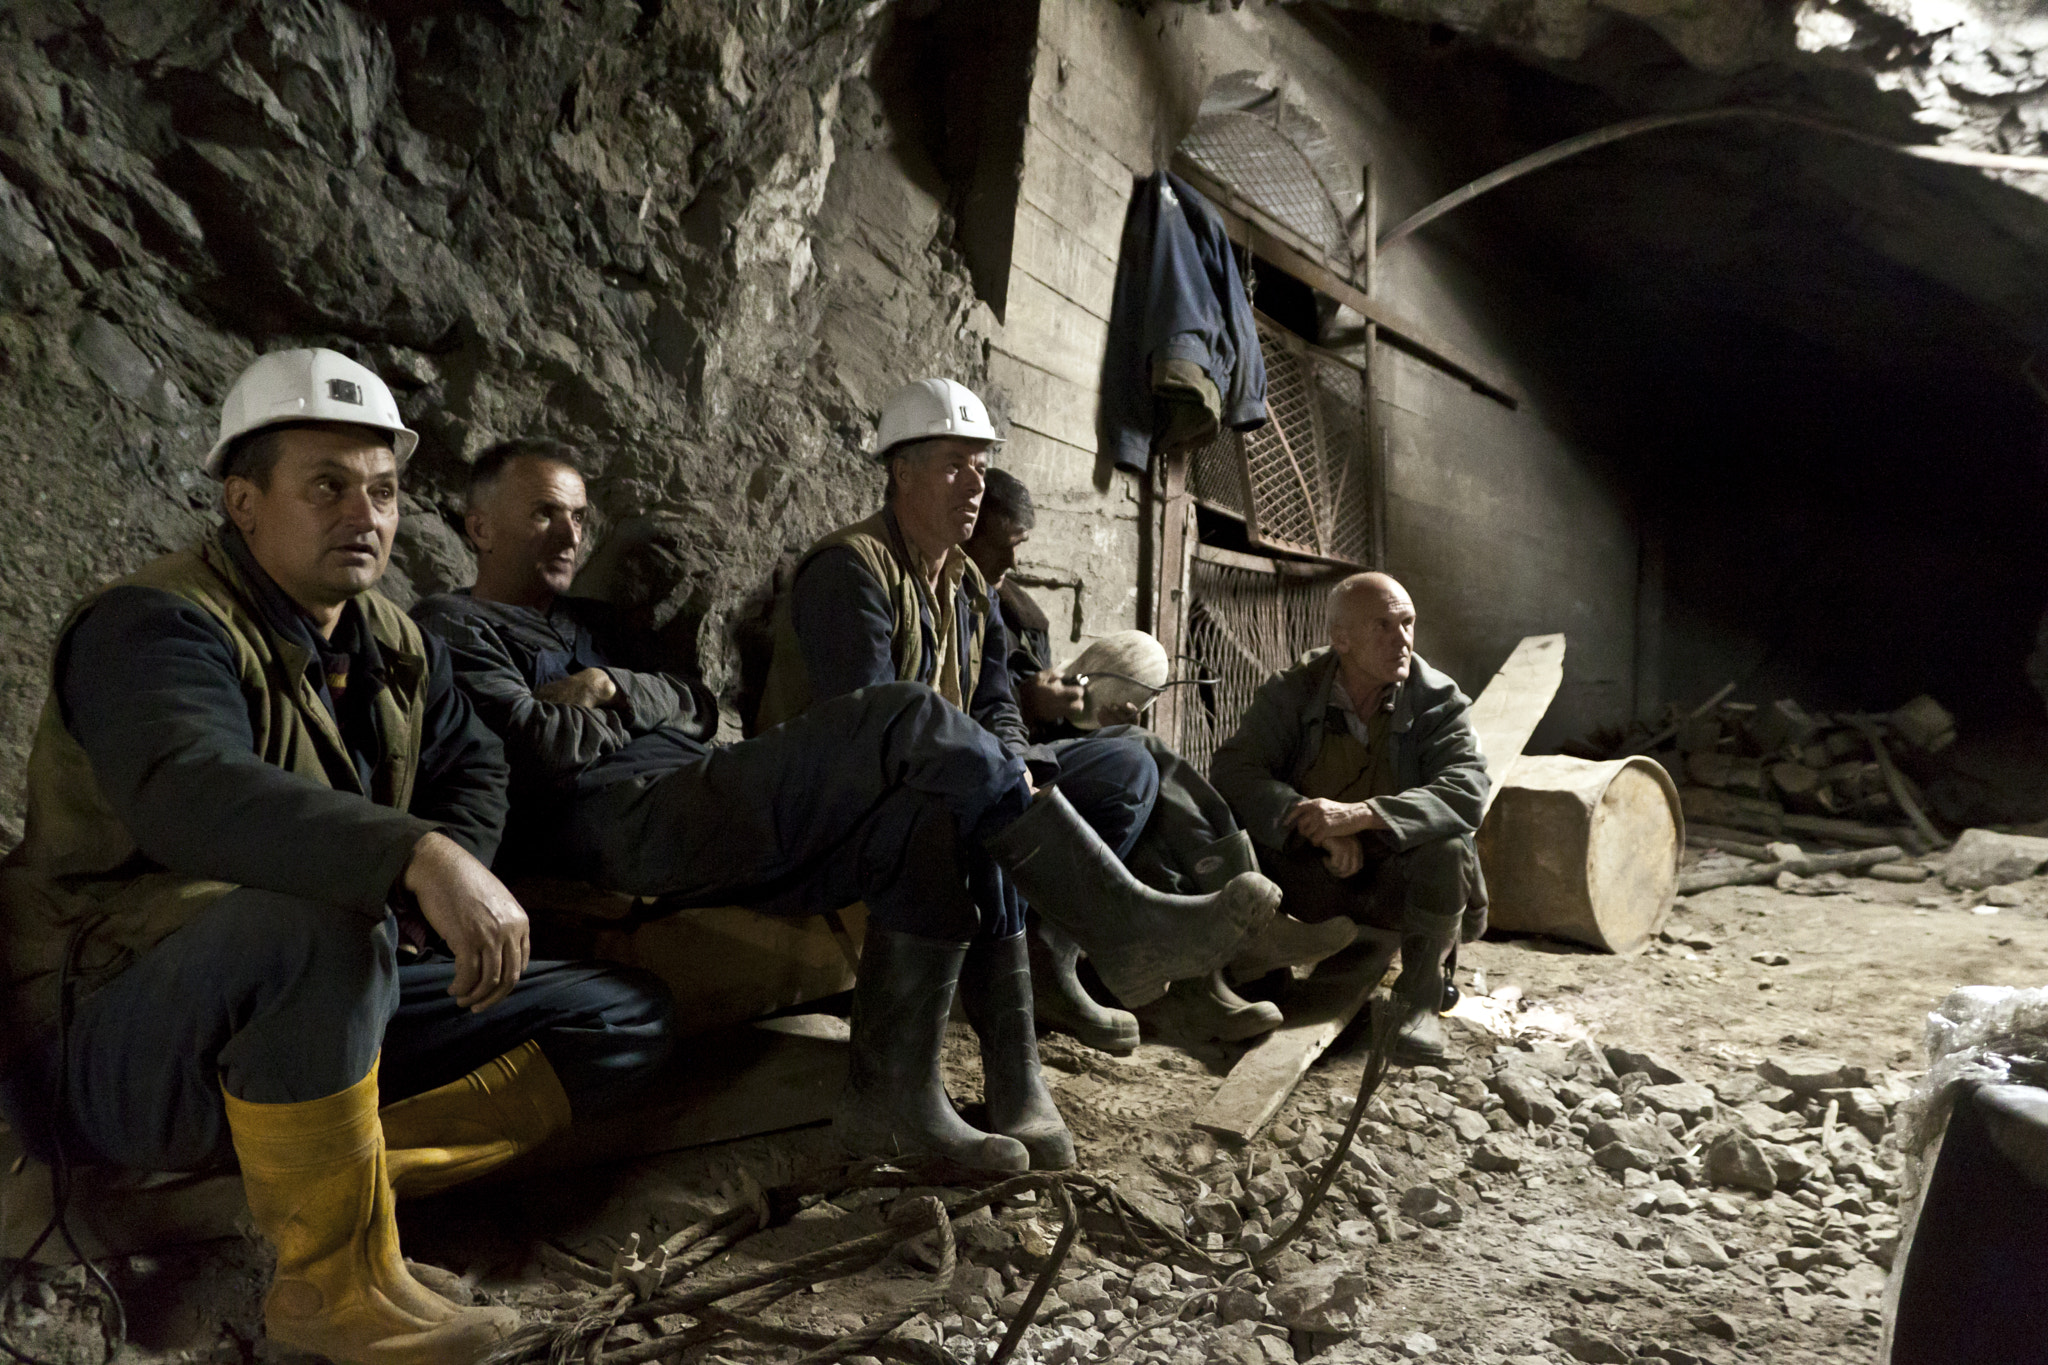 “Reuters” me shkrim për minatorët e Trepçës që po agjërojnë 800 metra nën tokë